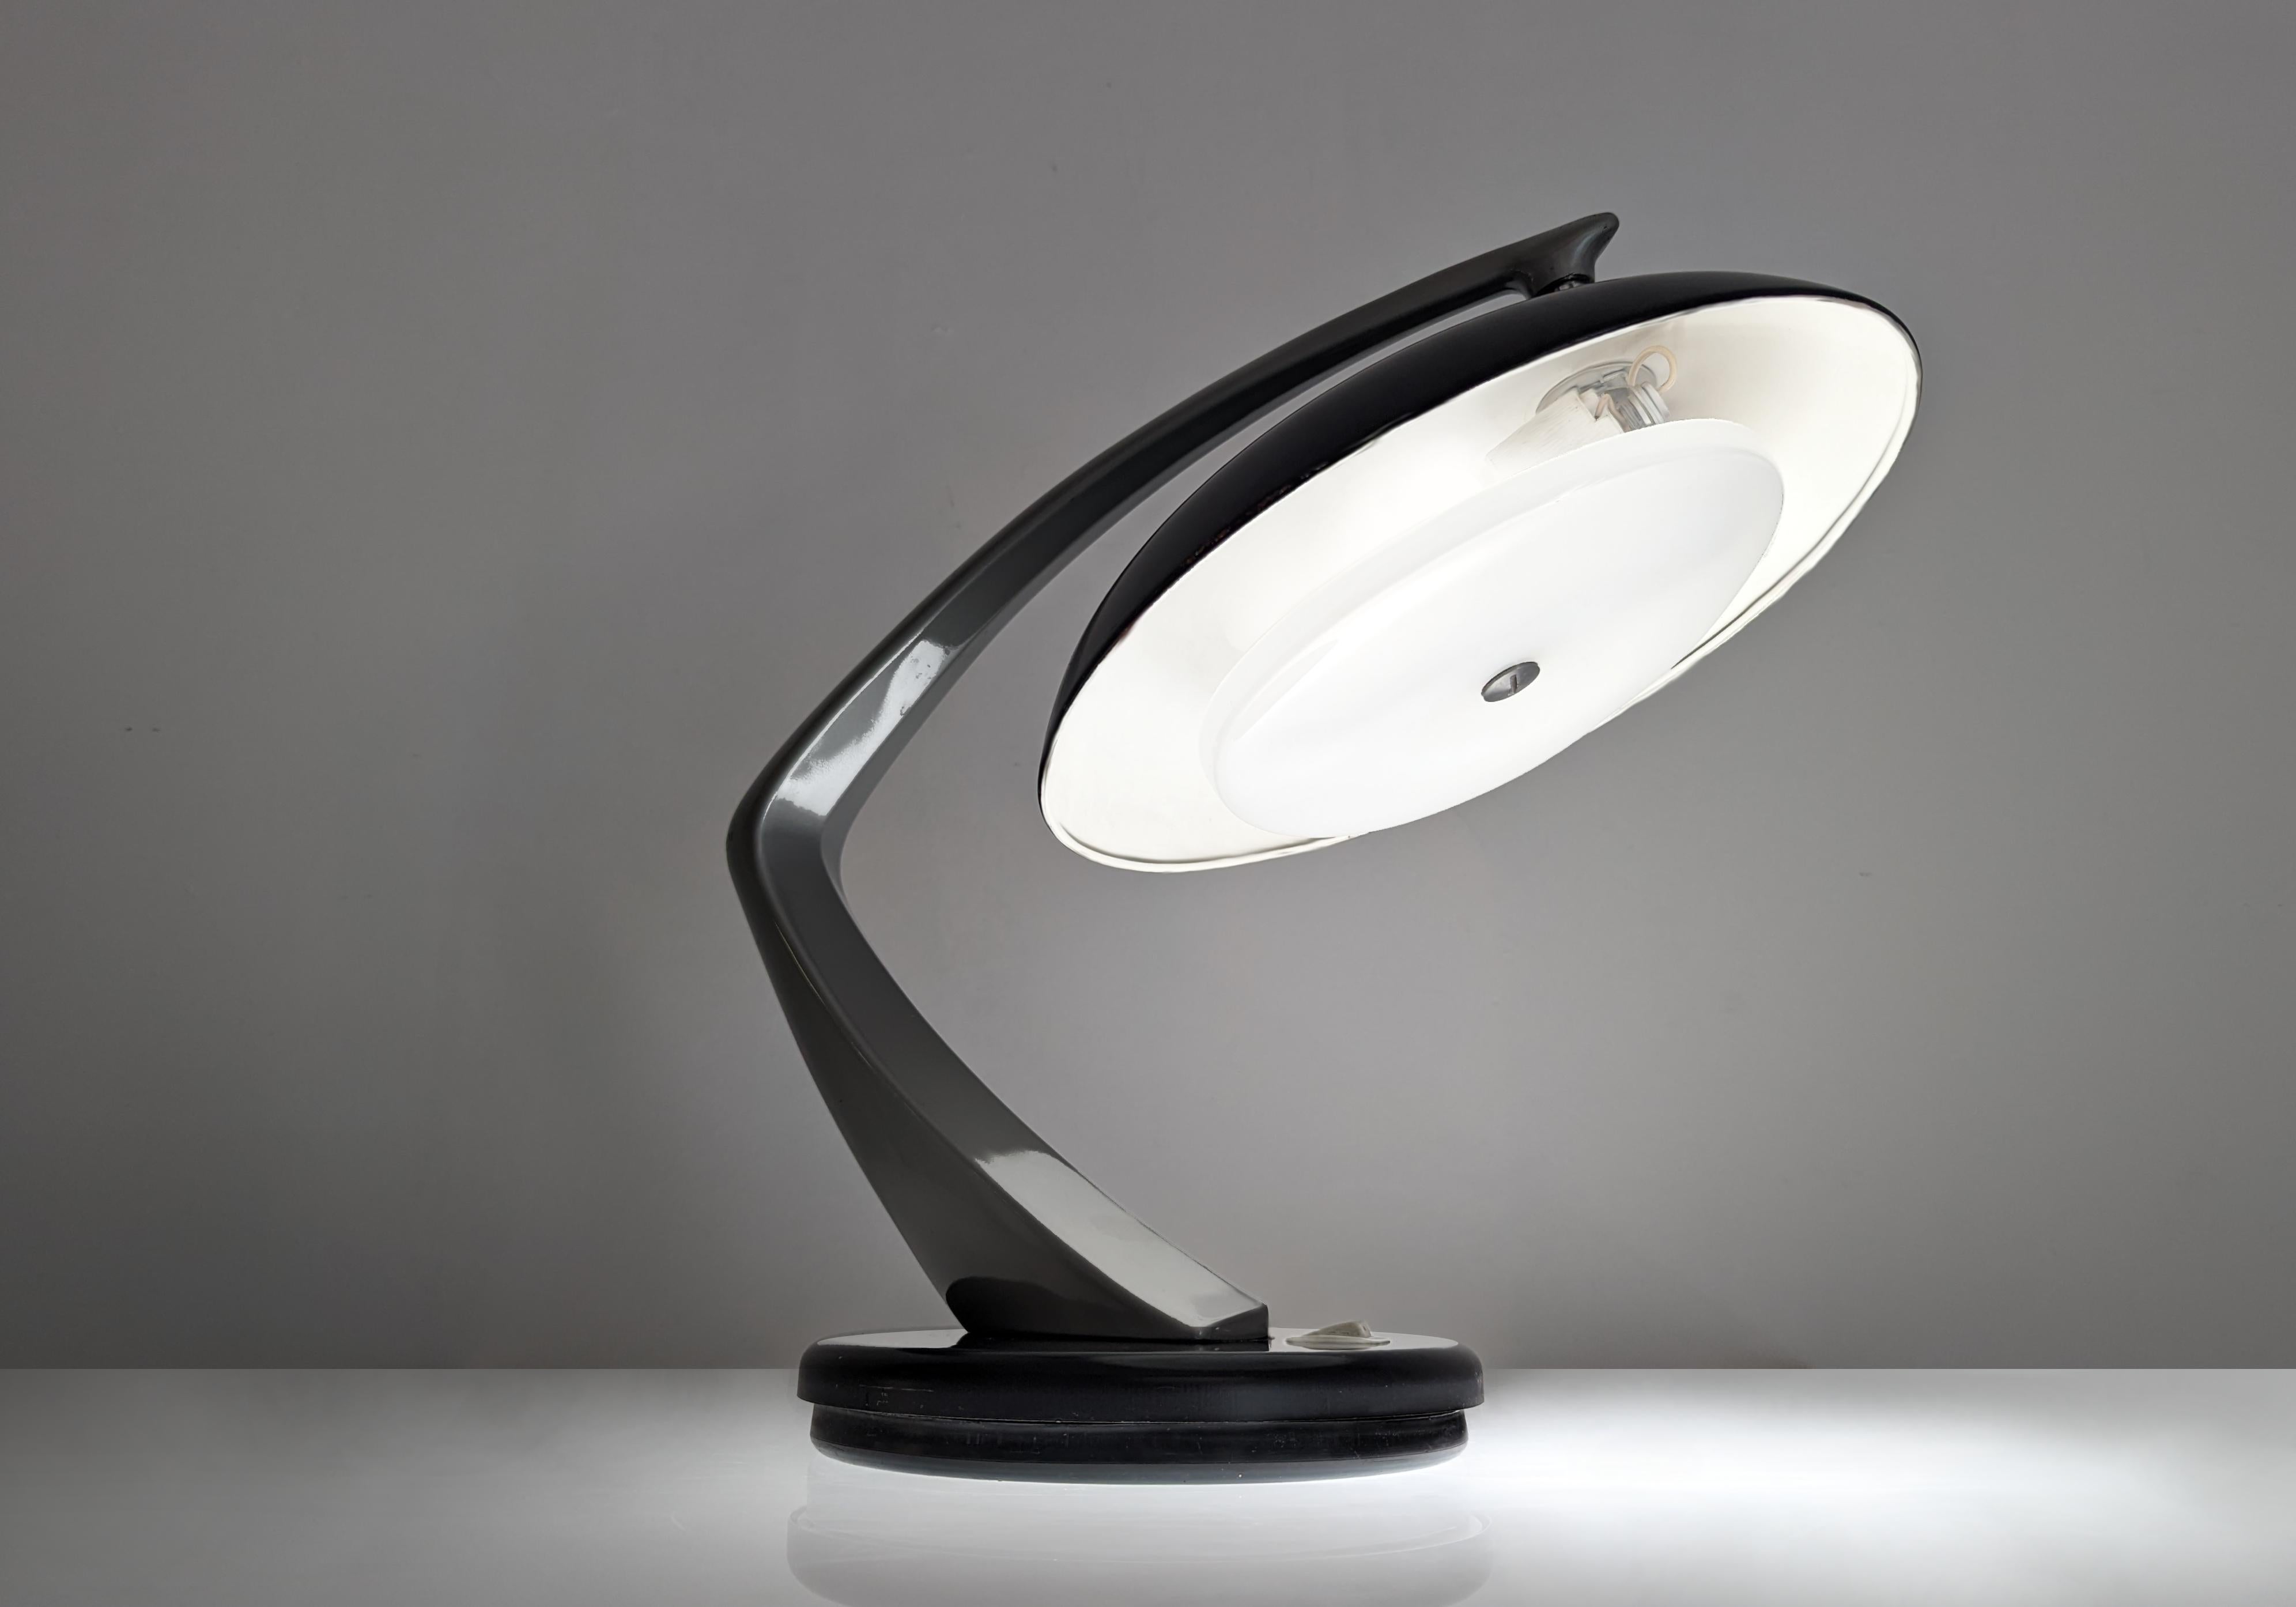 Fantastische Leuchte Boomerang 64, hergestellt von FASE und entworfen von Luis Pérez de la Oliva und Pedro Martín García im Jahr 1964, elegantes Modell in Schwarz und Grau, mit einem verstellbaren, schwenkbaren Schirm, der uns erlaubt, mit